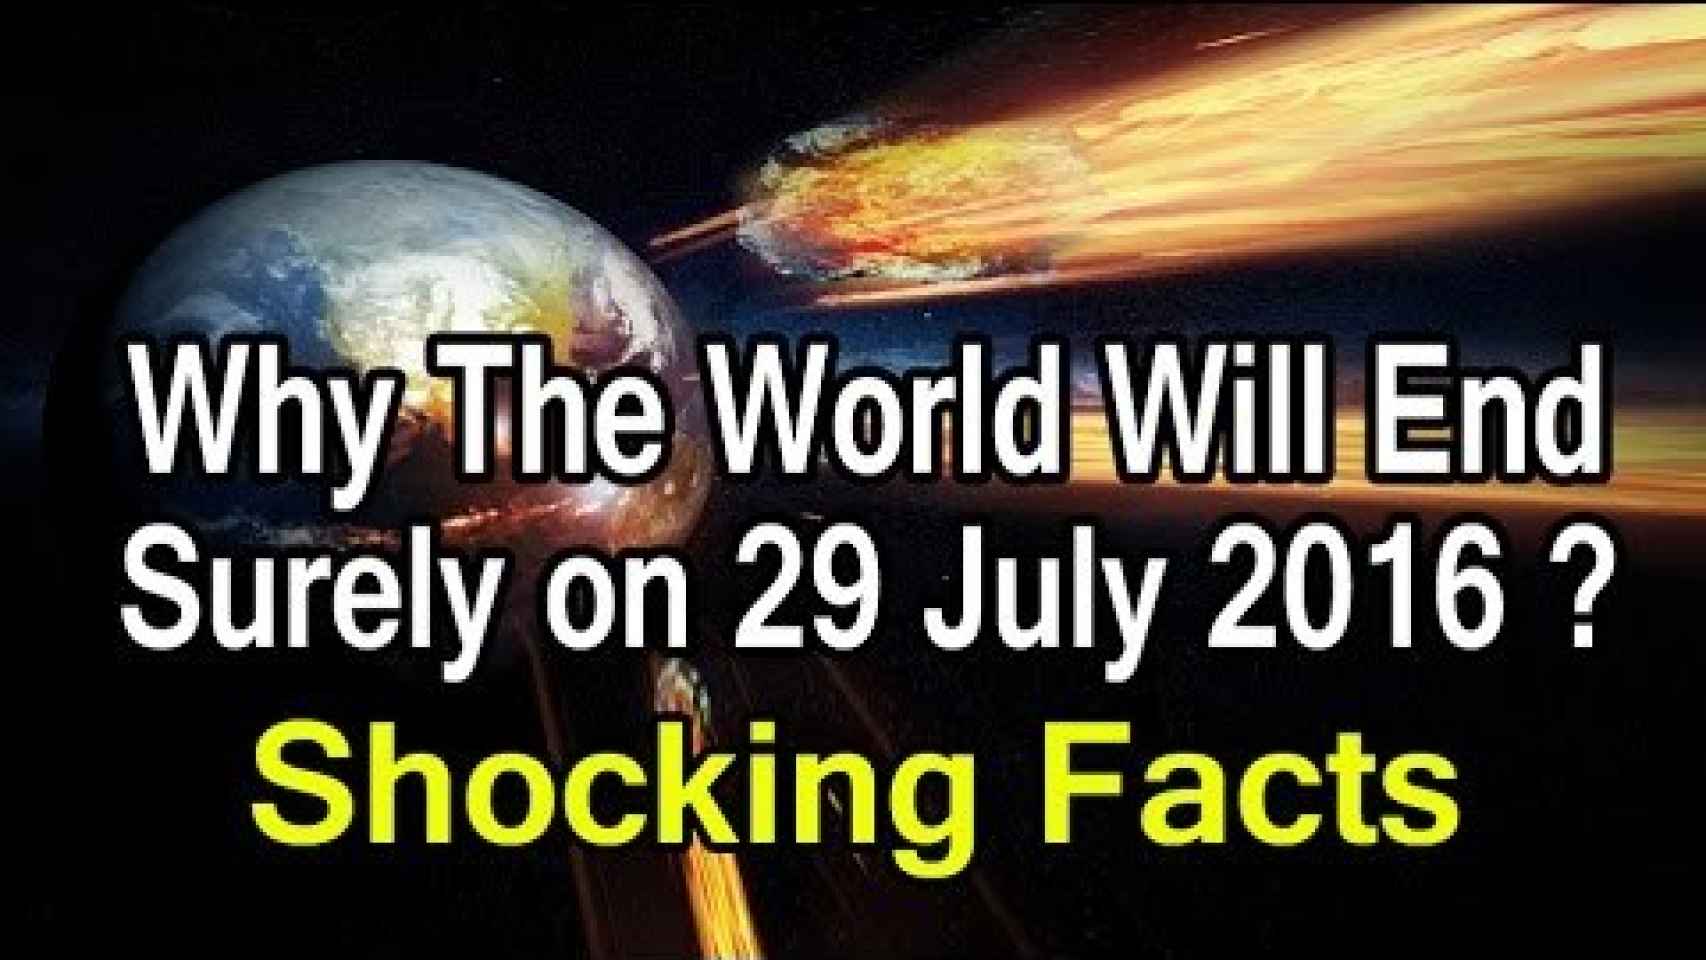 El vídeo que promete pruebas sobre el fin del mundo el 29 de julio de 2016.